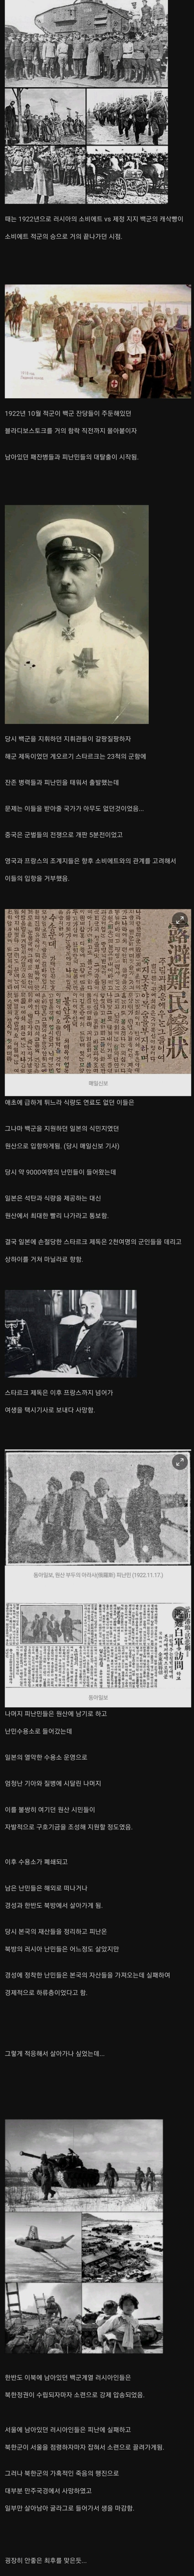 전쟁 때문에 한국으로 도망친 러시아인들의 최후